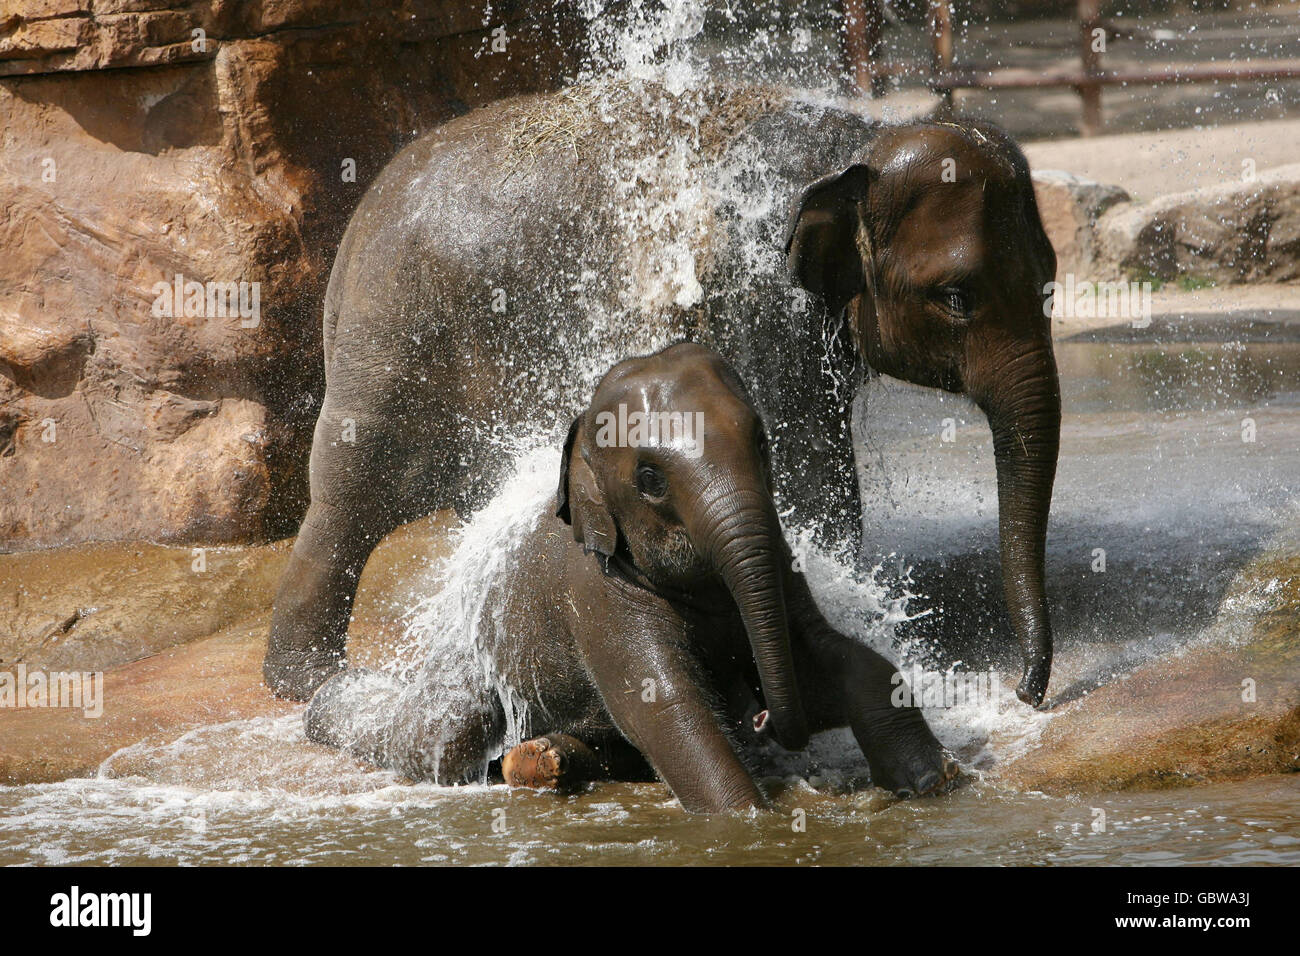 Baby-Elefanten kühlen sich bei den heißen Temperaturen ab, indem sie im Pool des Chester Zoo baden. Stockfoto